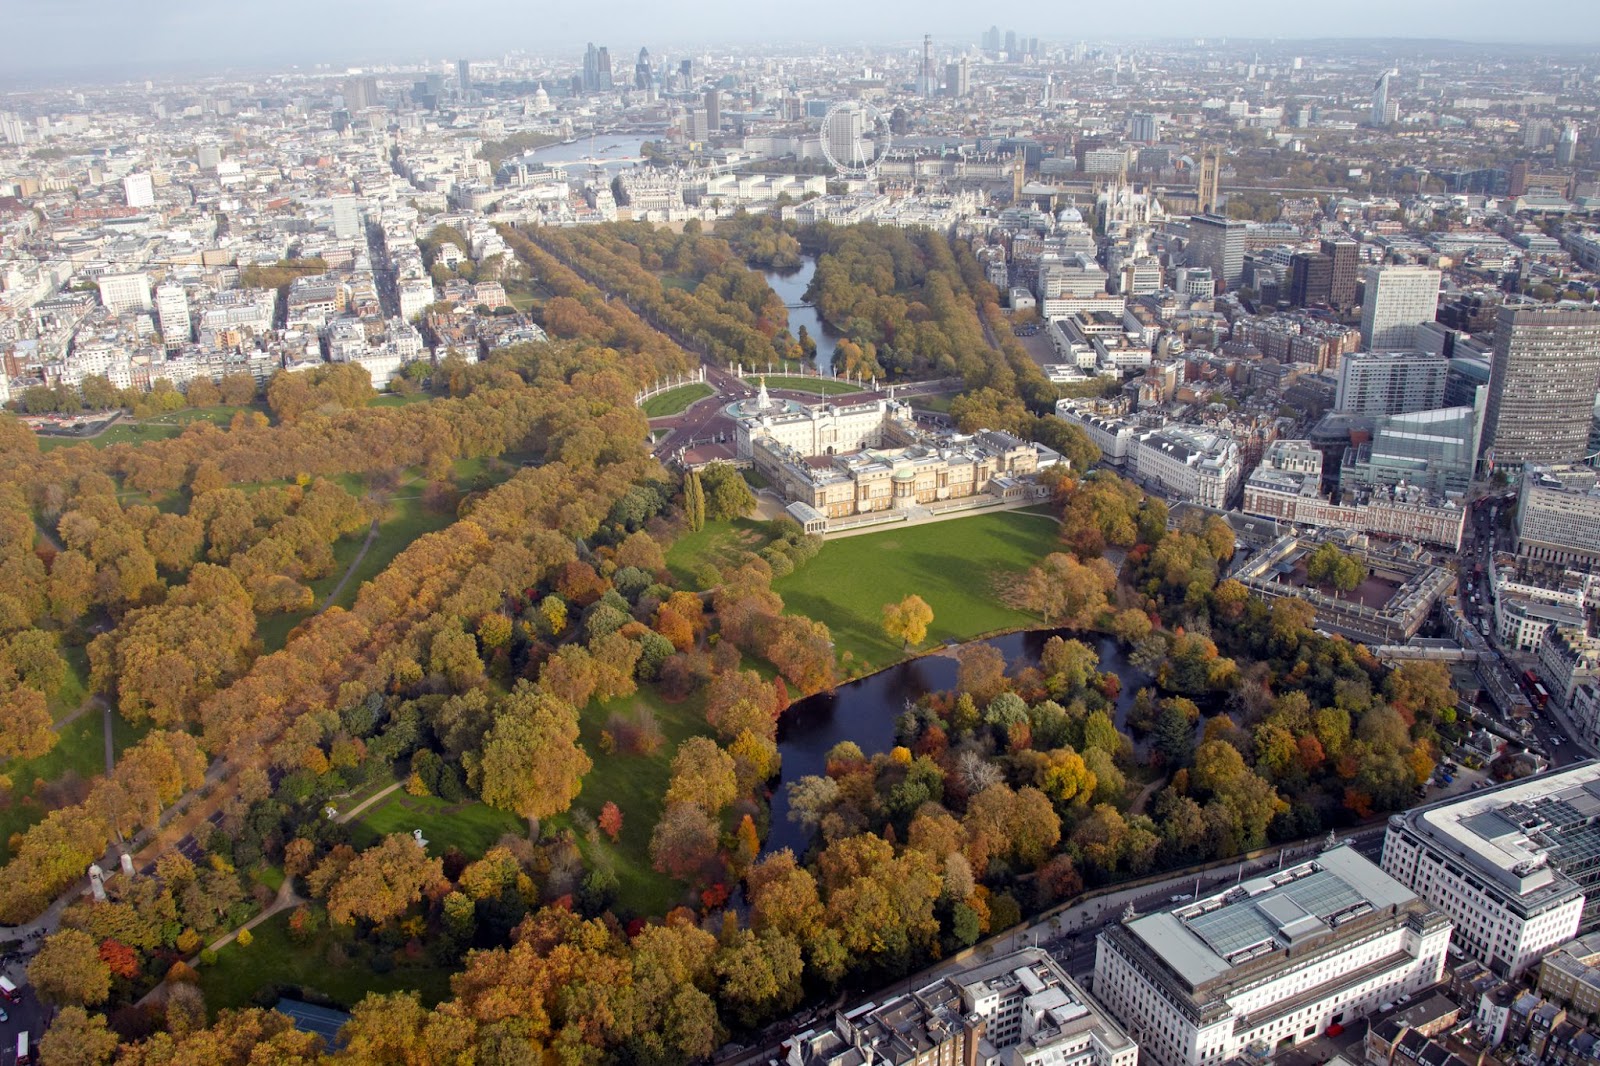 Imagem aérea do Palácio de Buckingham, que foi construído em 1703 e é onde acontecem os eventos oficiais da família real